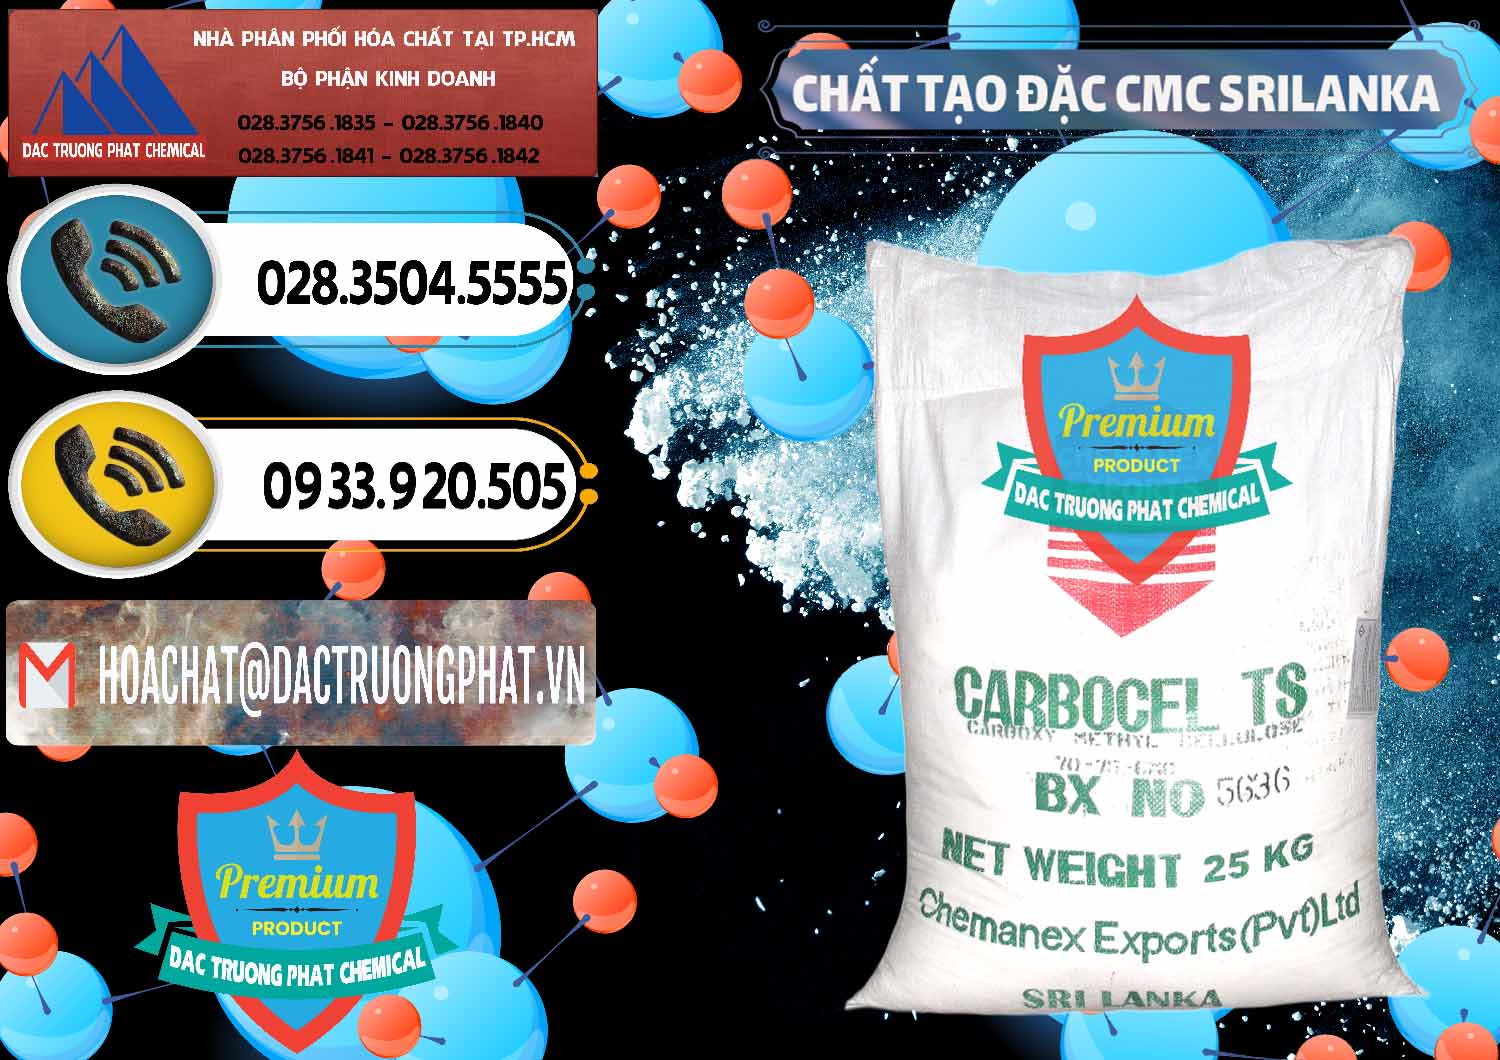 Đơn vị kinh doanh & bán Chất Tạo Đặc CMC - Carboxyl Methyl Cellulose Srilanka - 0045 - Cty cung cấp _ bán hóa chất tại TP.HCM - hoachatdetnhuom.vn